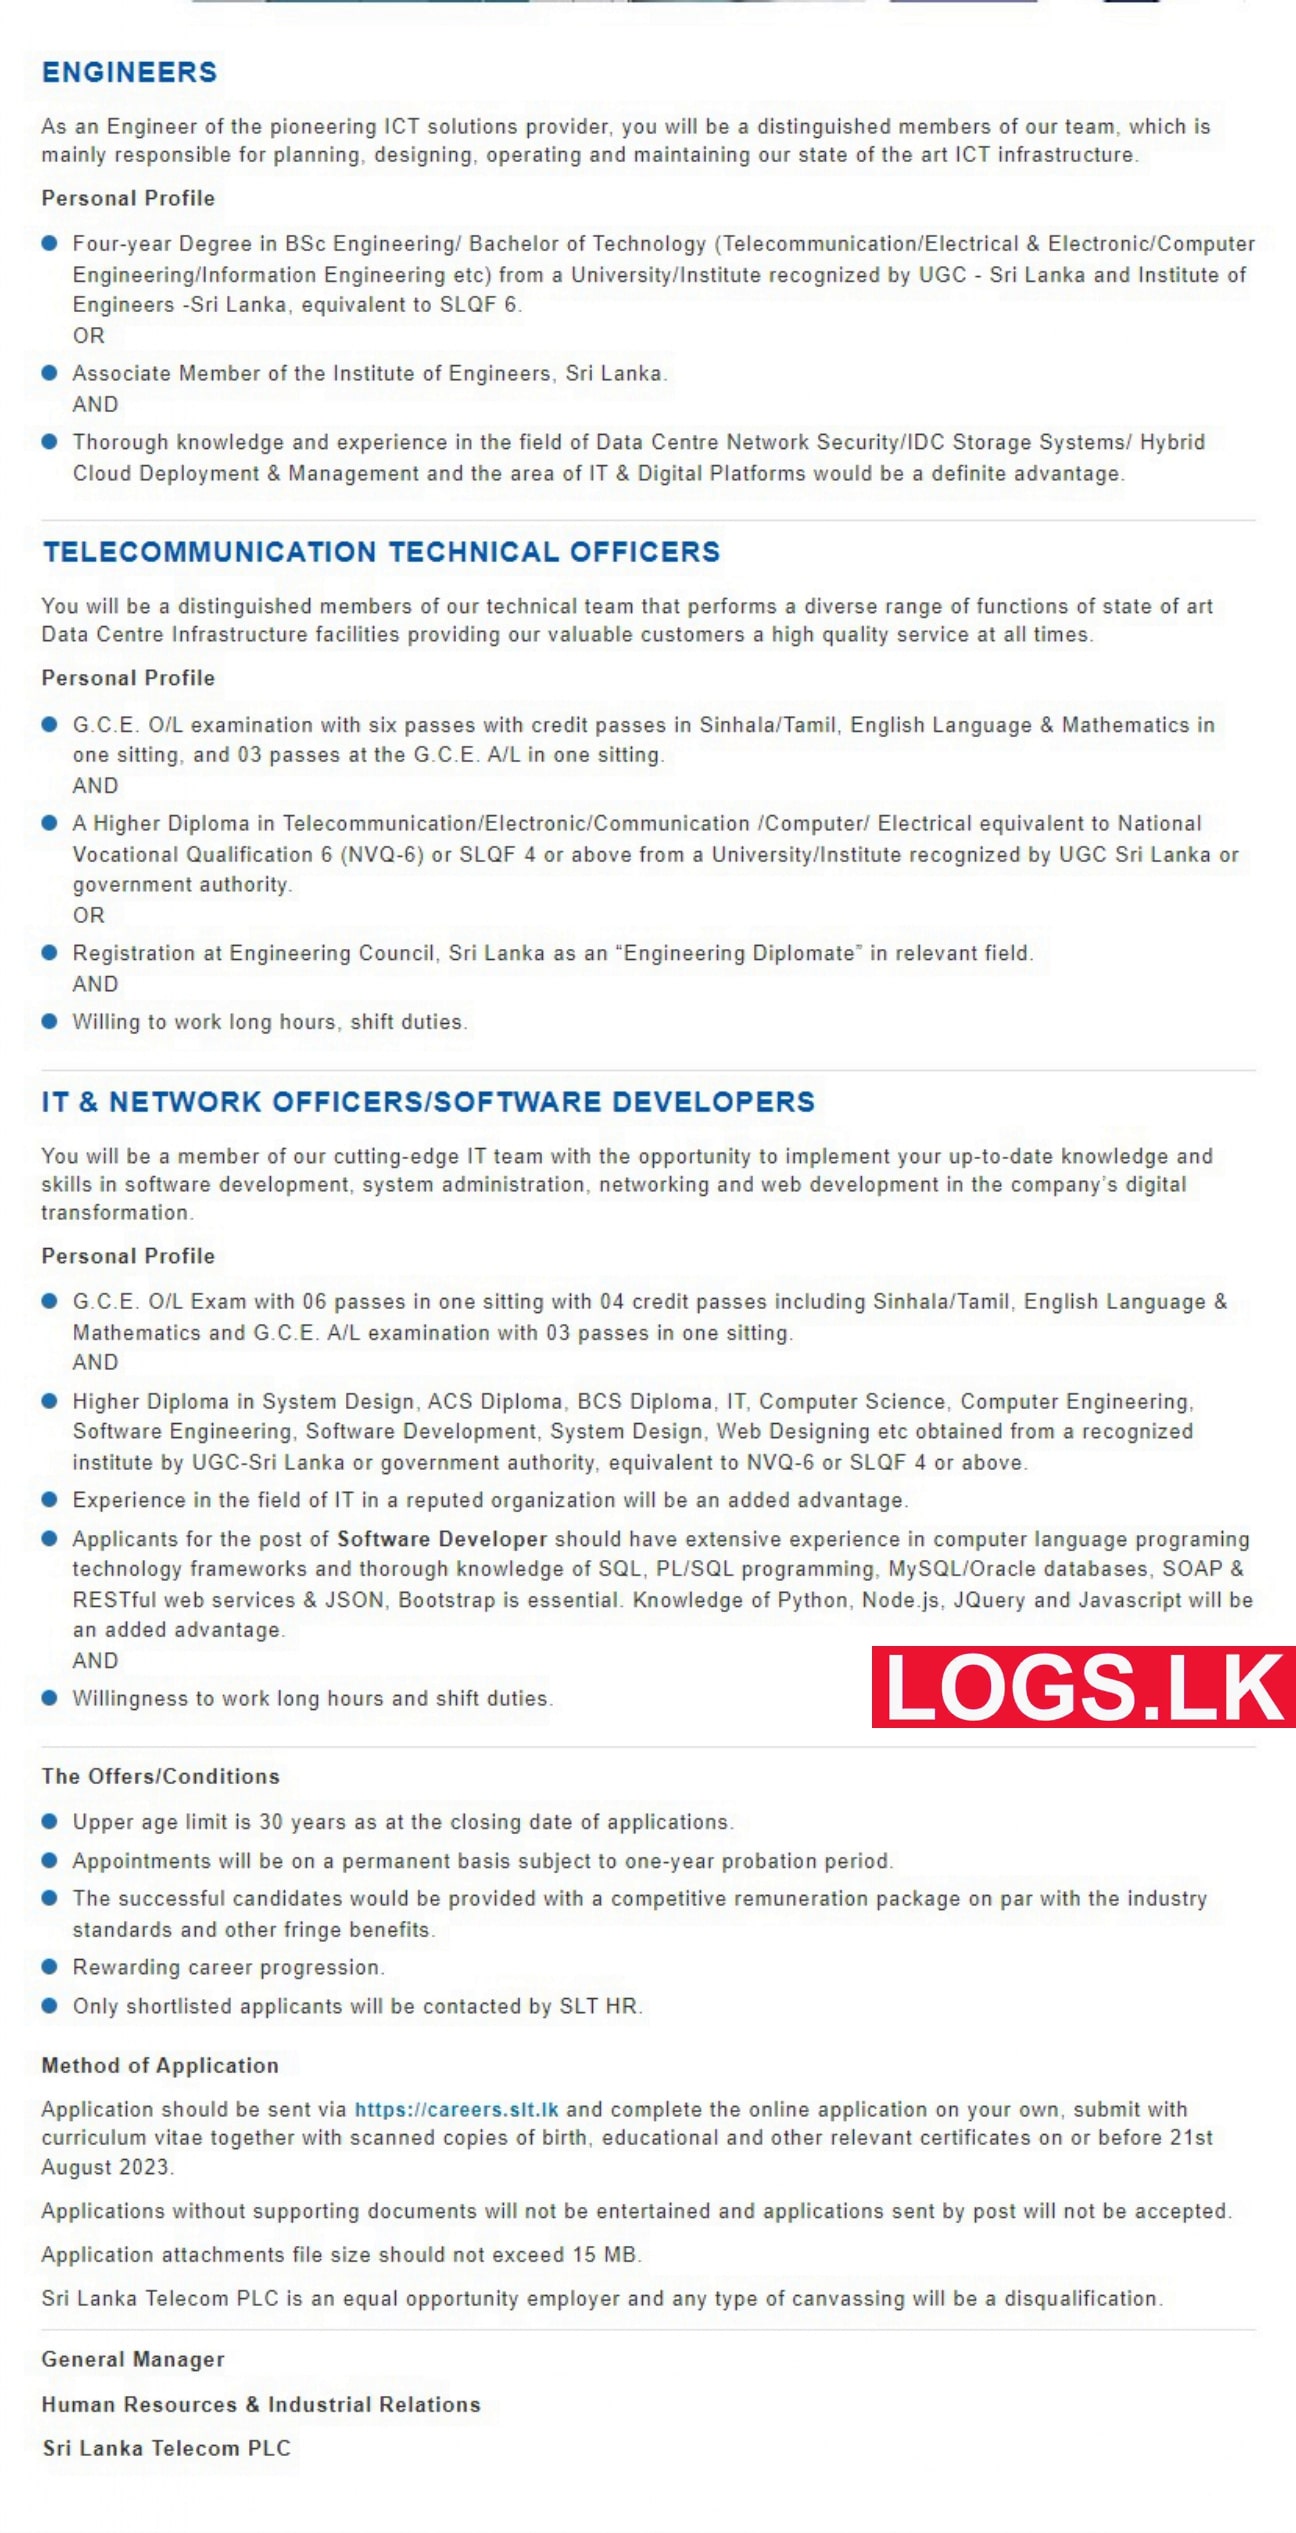 Software Developer / Engineer / Technical Officer - SLT Mobitel Vacancies 2023 Application Form, Details Download